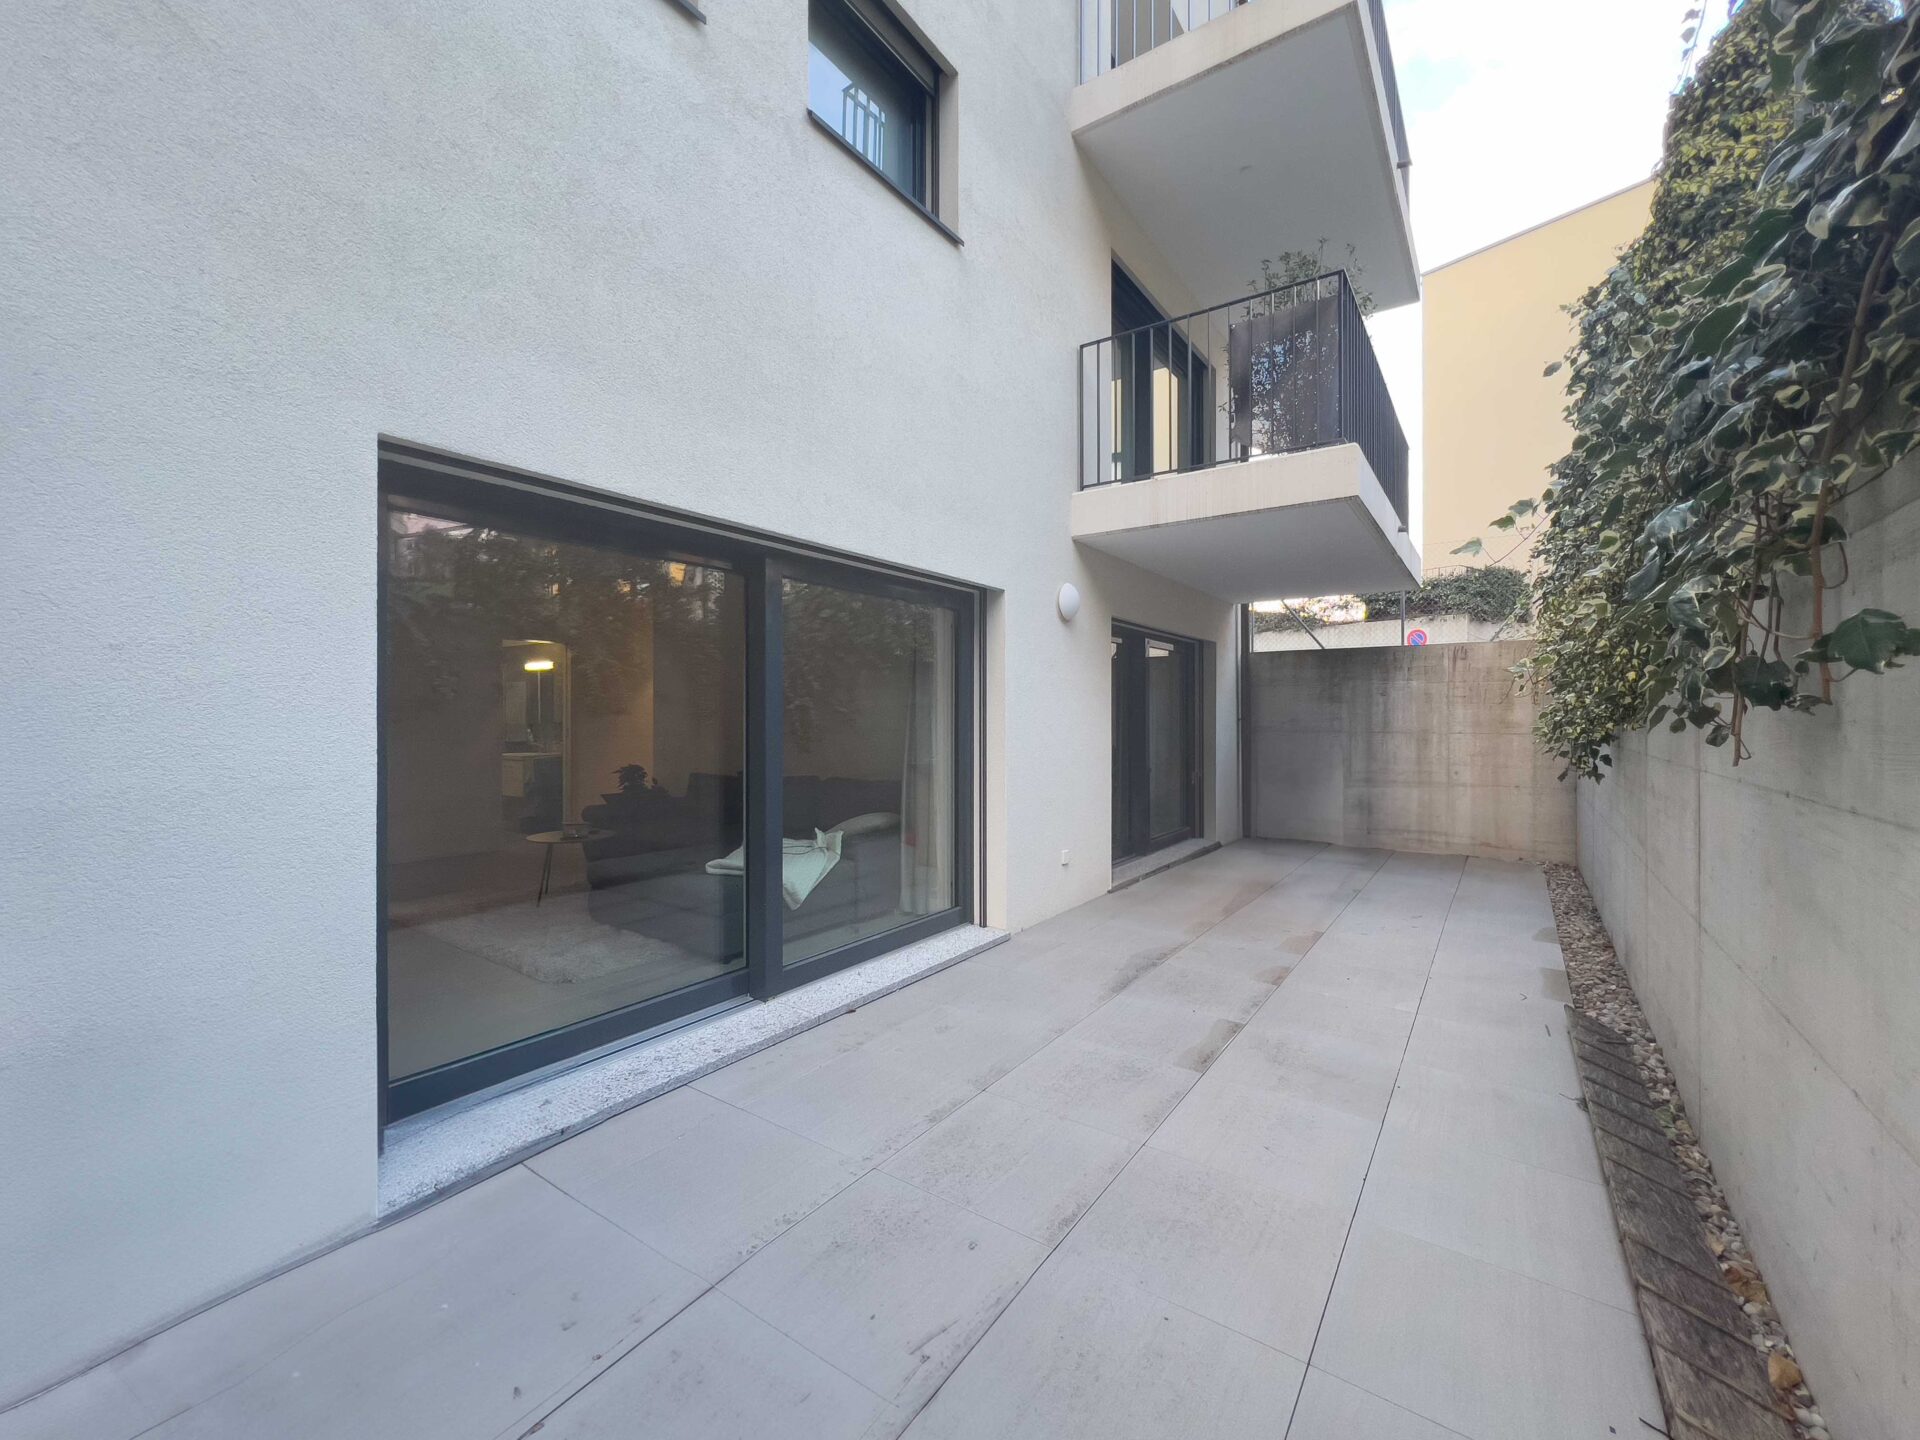 Moderno appartamento 3.5 locali in vendita a Camorino in una residenza di recente costruzione